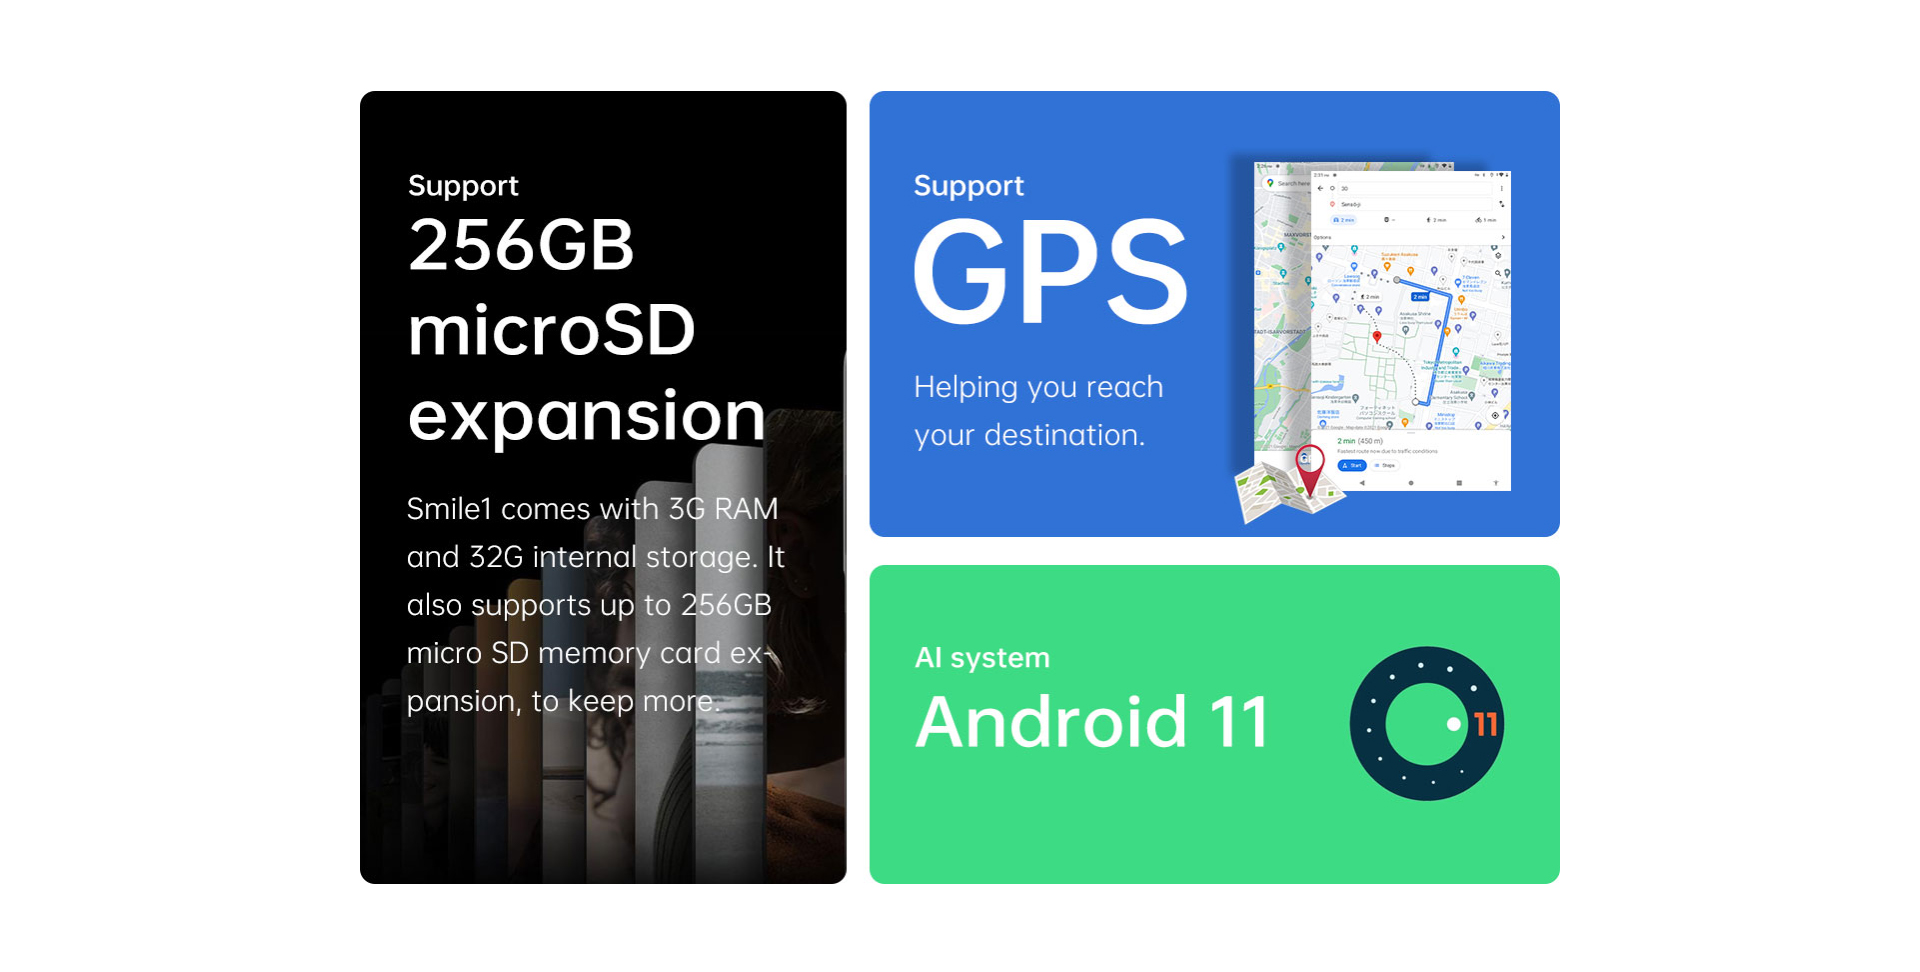 รายละเอียดเพิ่มเติมเกี่ยวกับ Alldocube Smile 1 แท็บเล็ตจอ 8 นิ้ว 4G ใส่ซิมโทรได้ CPU Tiger T310 Quad-core RAM 3GB  ROM 32GB  Android11 2.4/5GHz WiFi GPS Blth 4000mAh